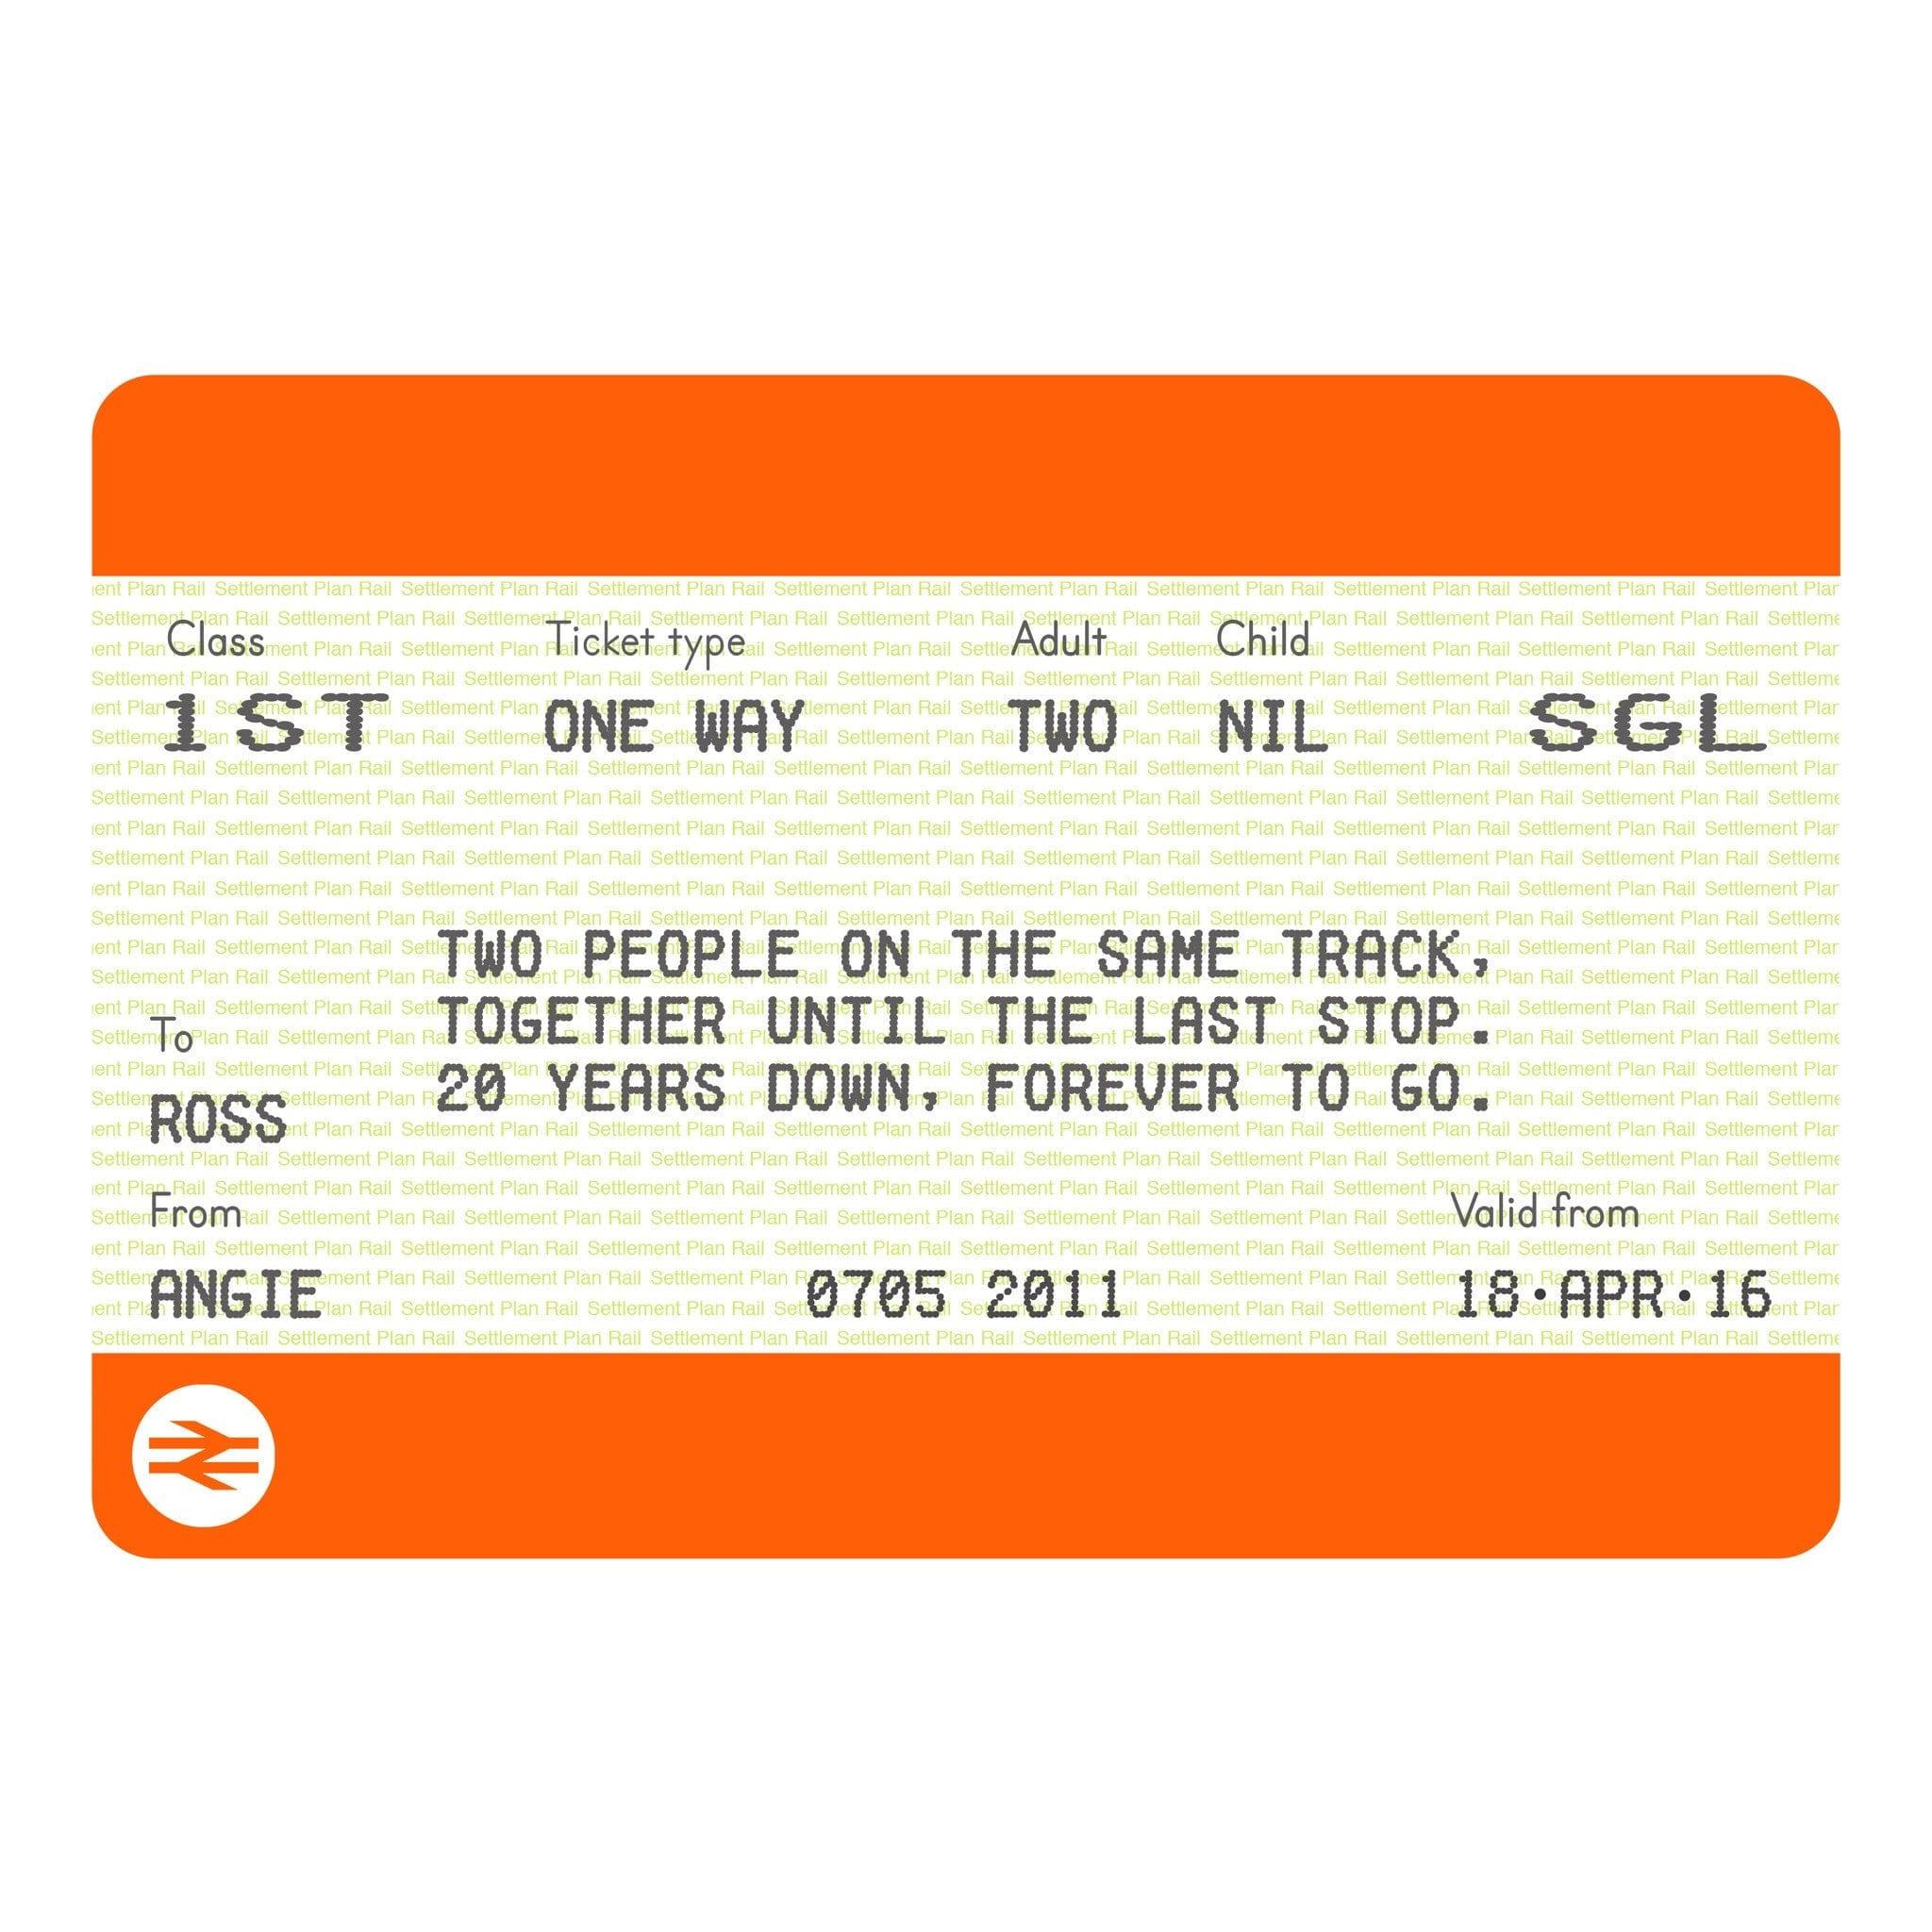 G tickets. Билет Railway. Билет ticket. Train ticket. Train ticket to London.